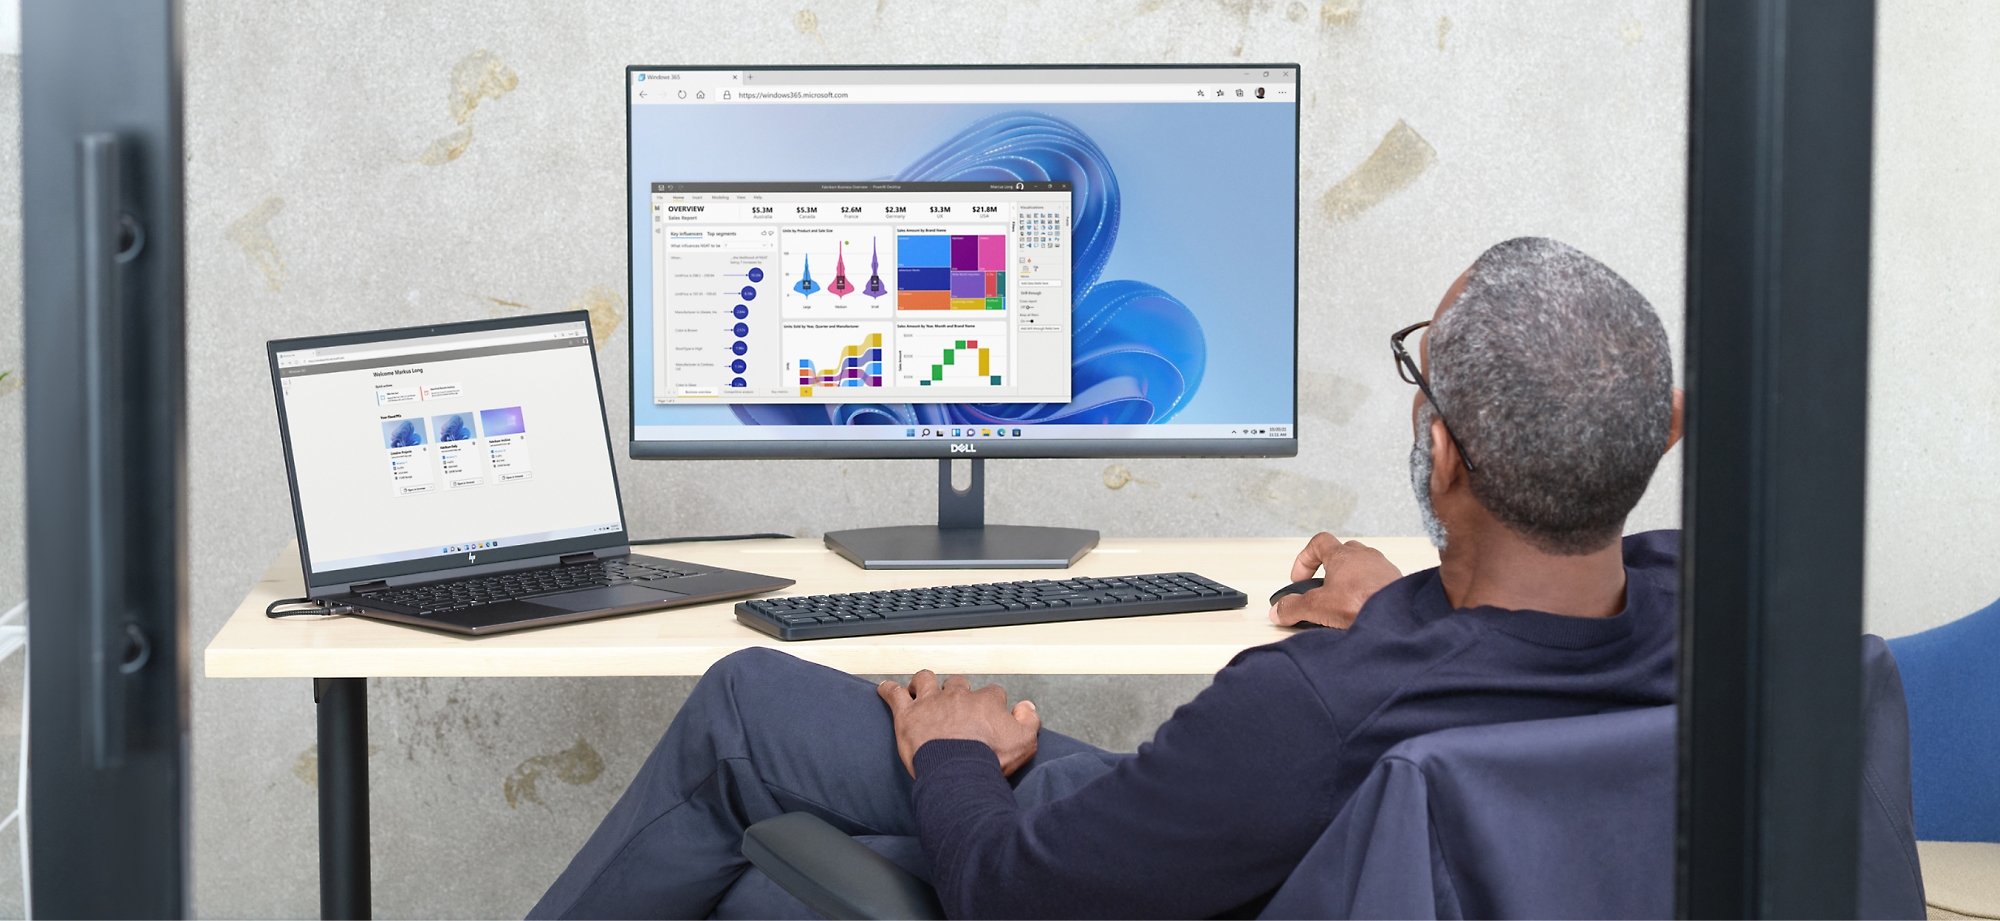 Ένας άνδρας εξετάζει τα γραφήματα δεδομένων σε μια οθόνη υπολογιστή και έναν φορητό υπολογιστή σε μια ρύθμιση γραφείου.